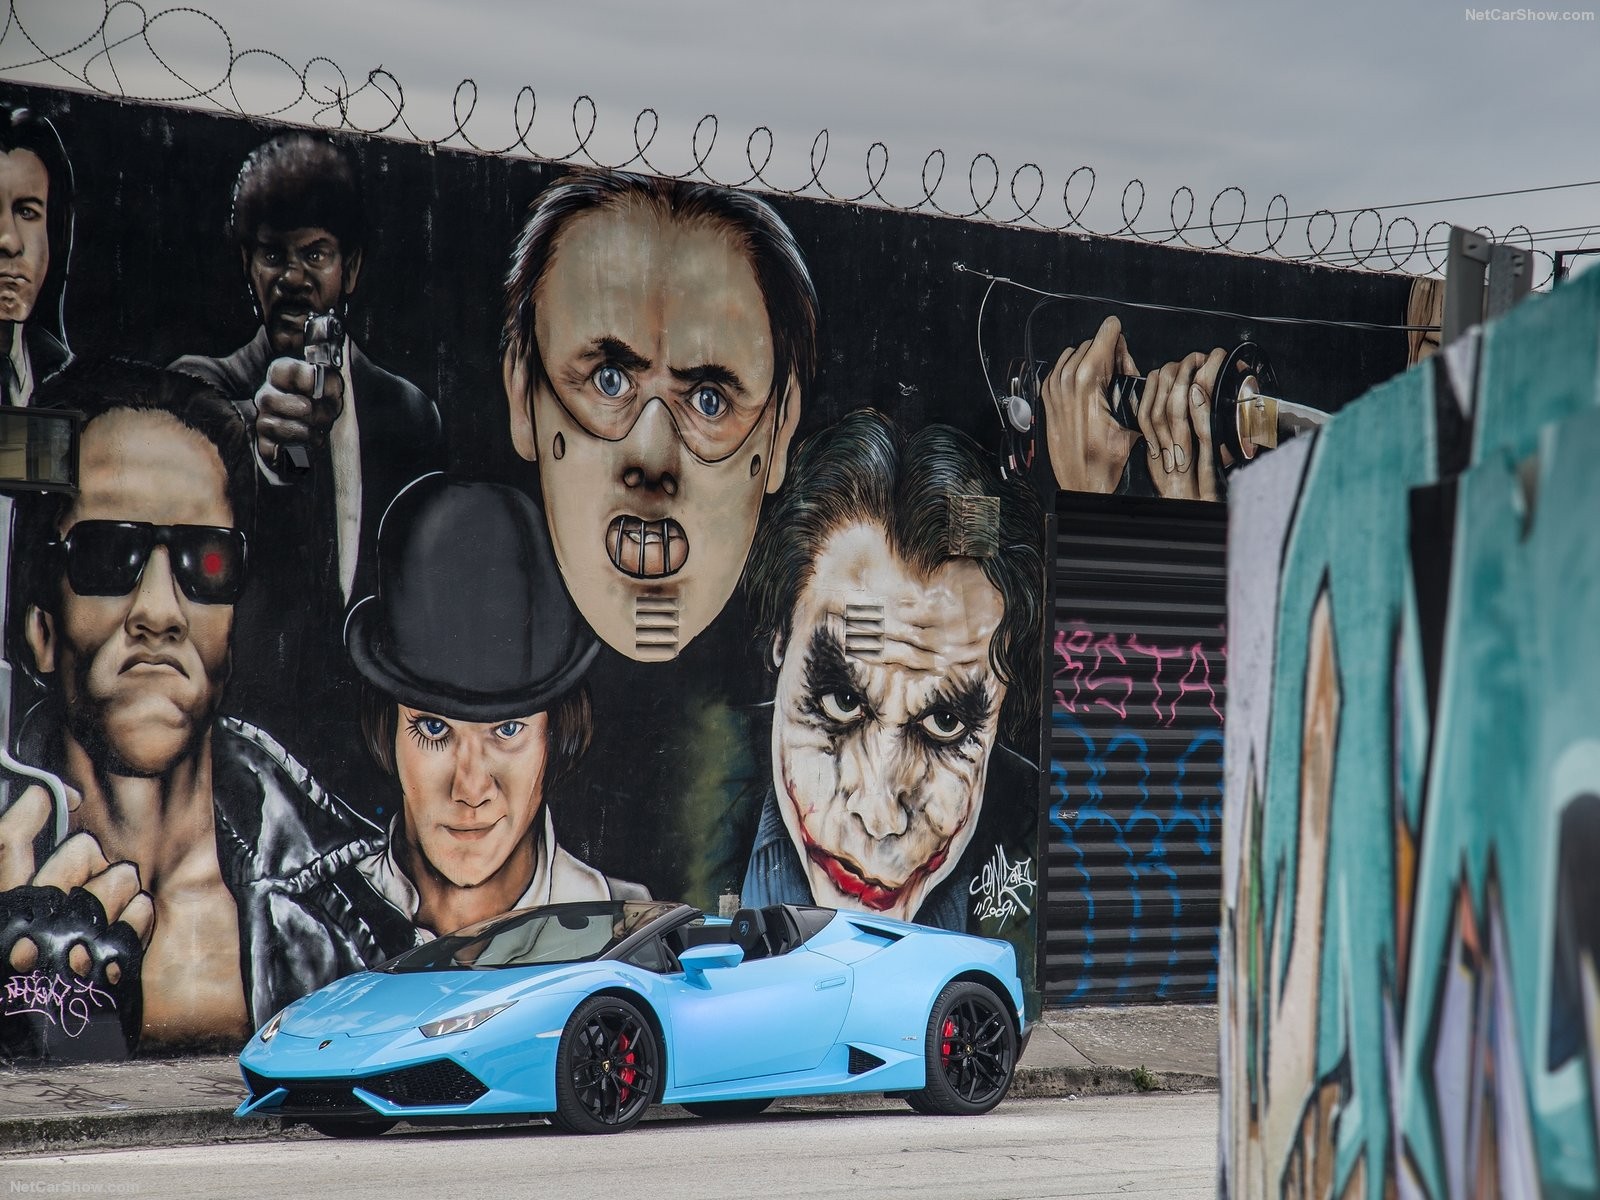 General 1600x1200 car supercars Lamborghini Lamborghini Huracan Spyder graffiti mural Cyan Cars Terminator Hannibal Lecter Joker Pulp Fiction wall barbed wire vehicle urban movies